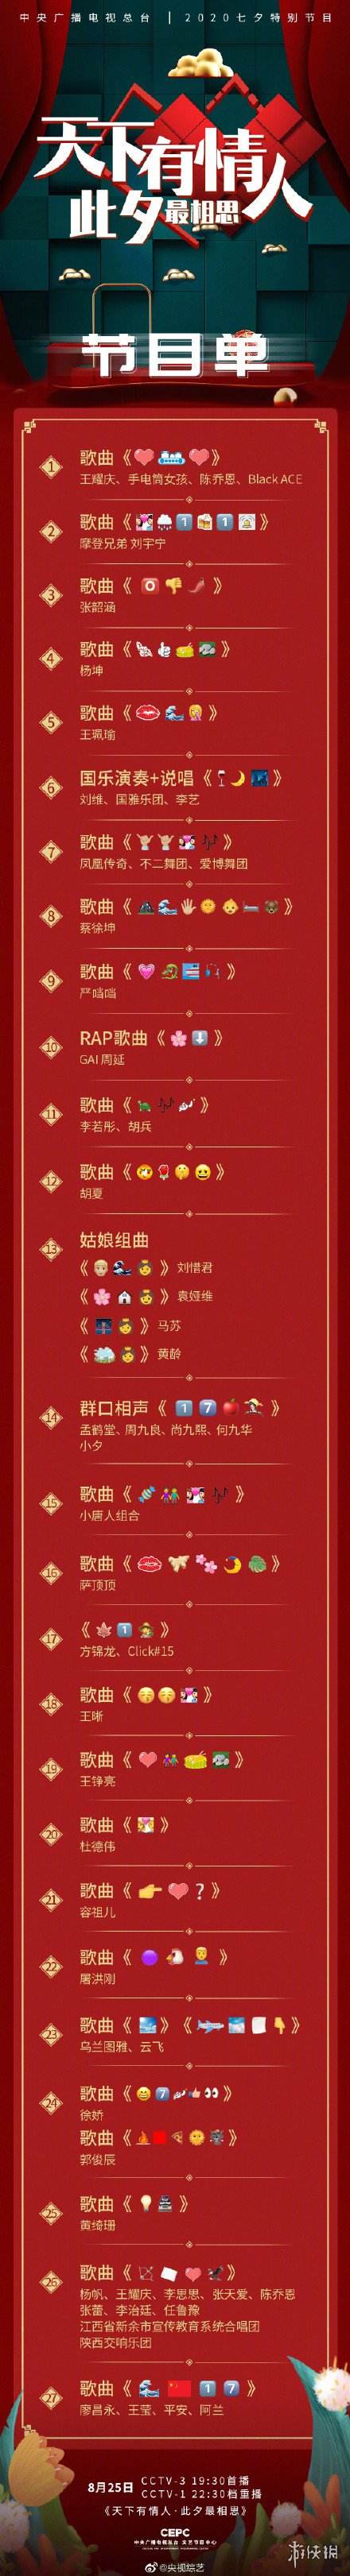 央视七夕晚会emoji节目单介绍 七夕晚会有哪些明星参与